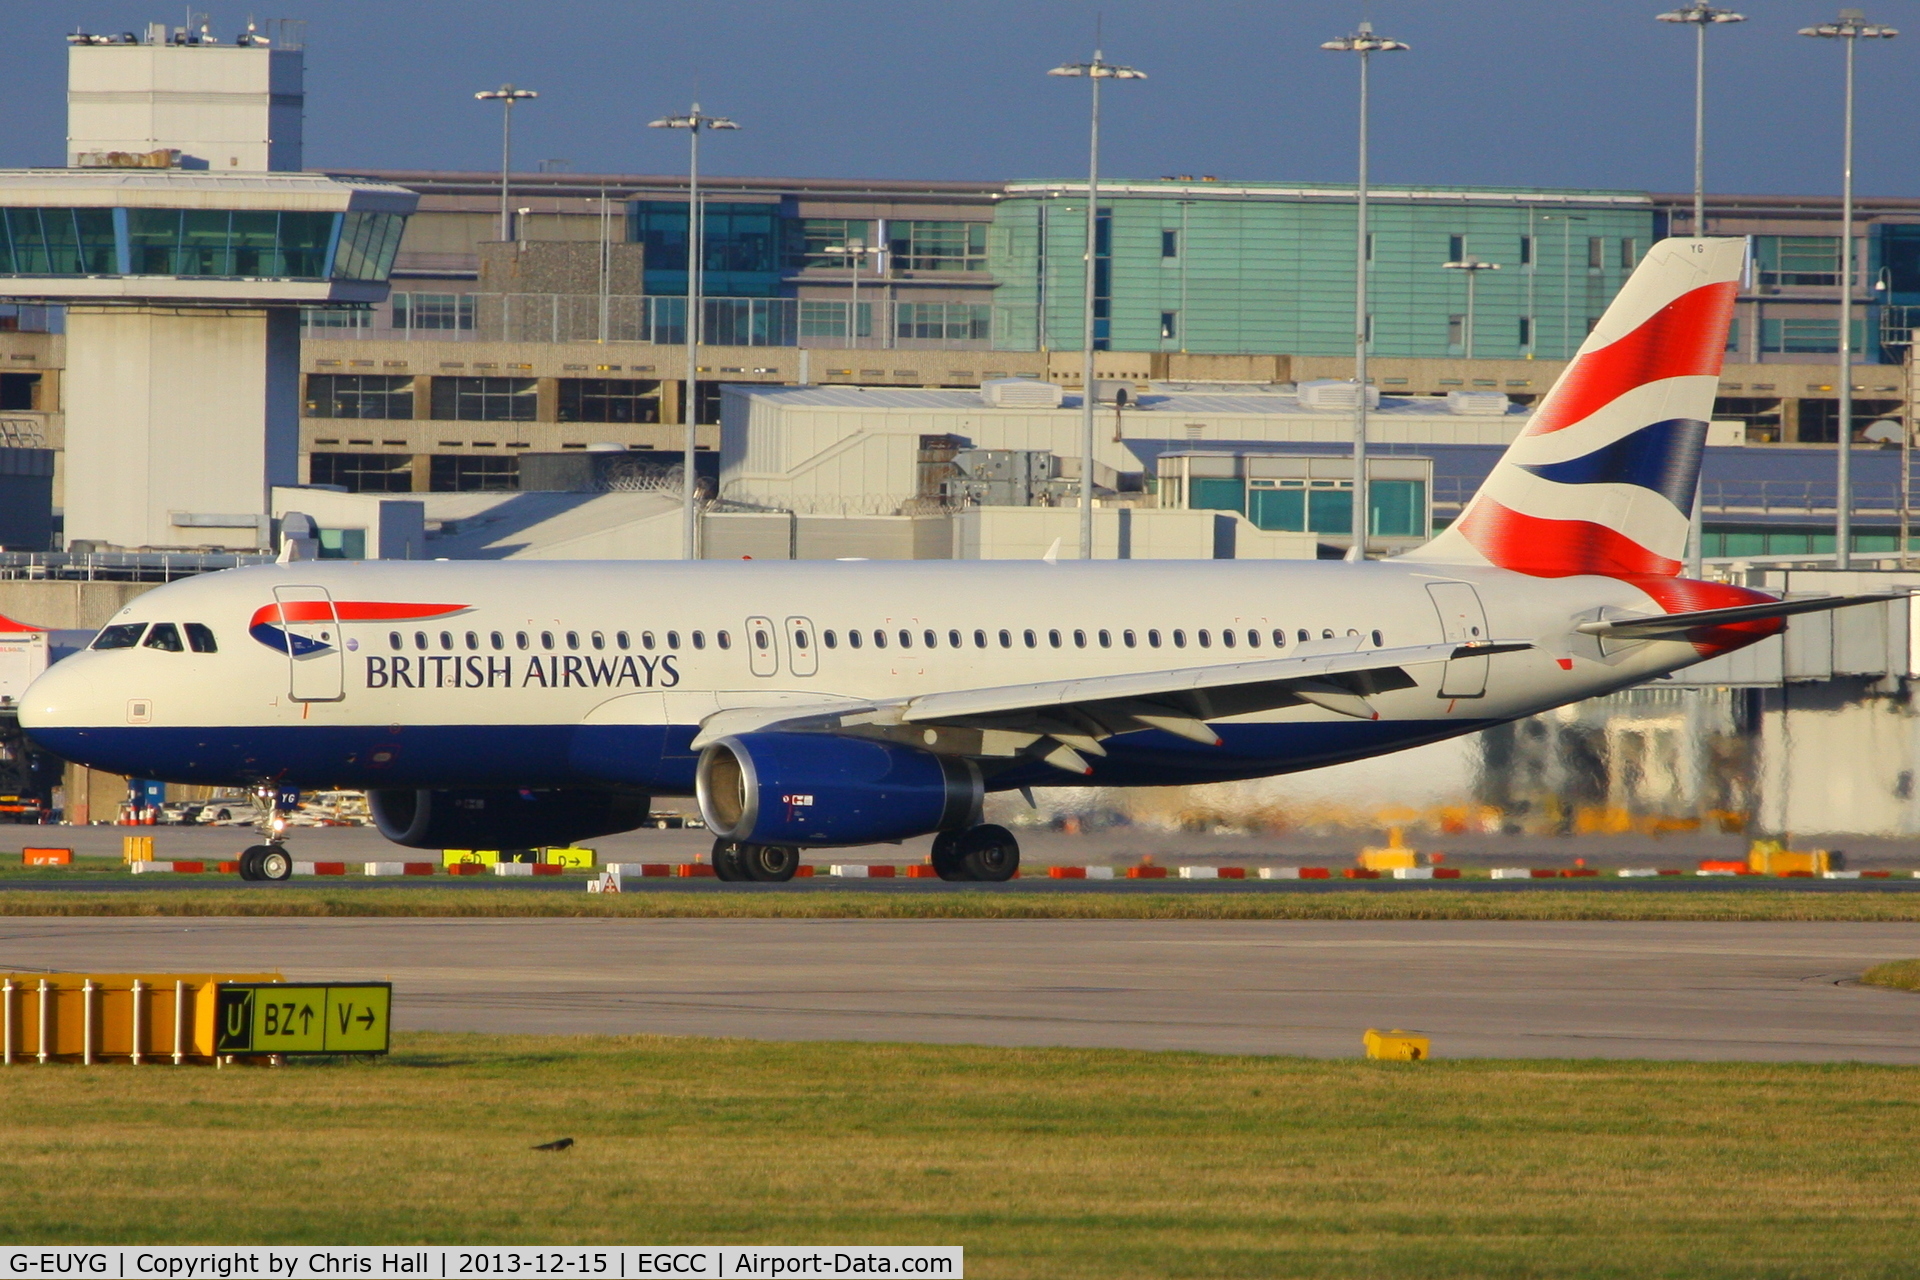 G-EUYG, 2010 Airbus A320-232 C/N 4238, British Airways